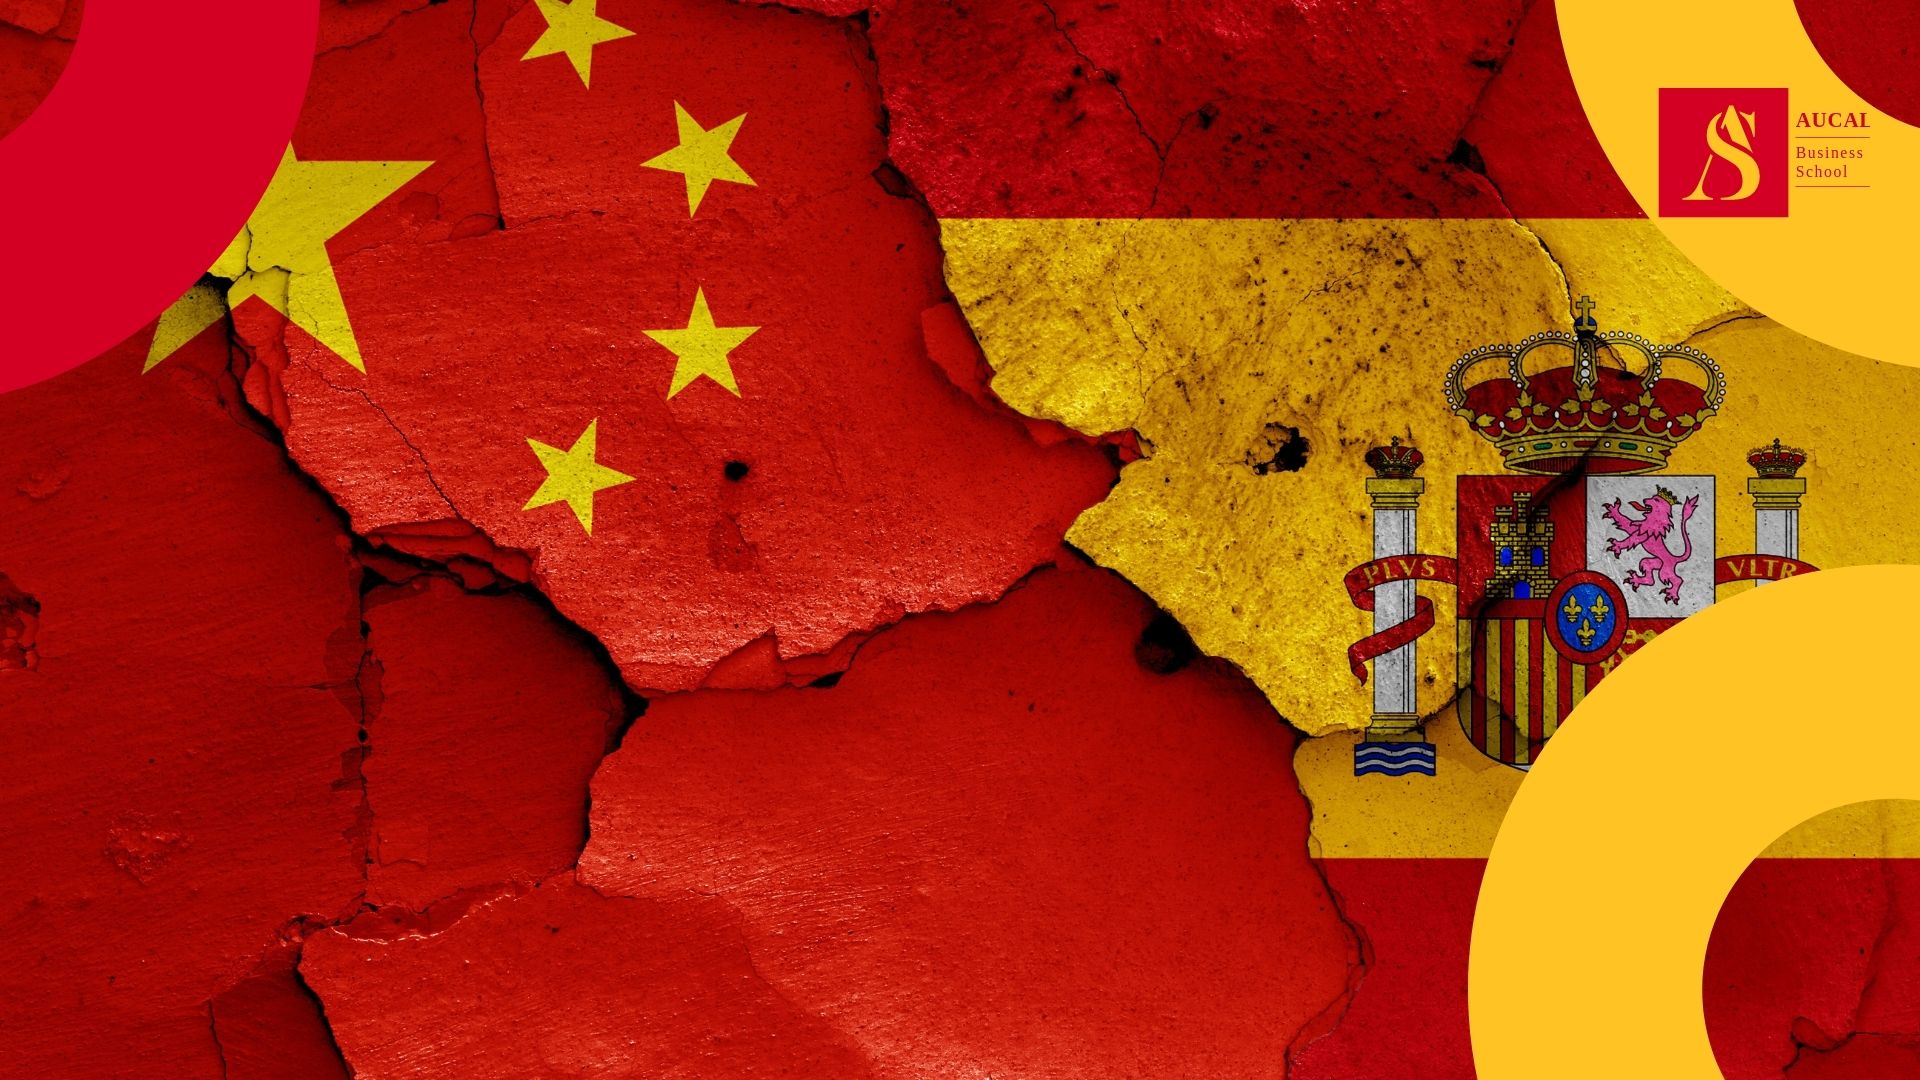 AUCAL Bussines School Blog Social Invasión china en el mercado inmobiliario español